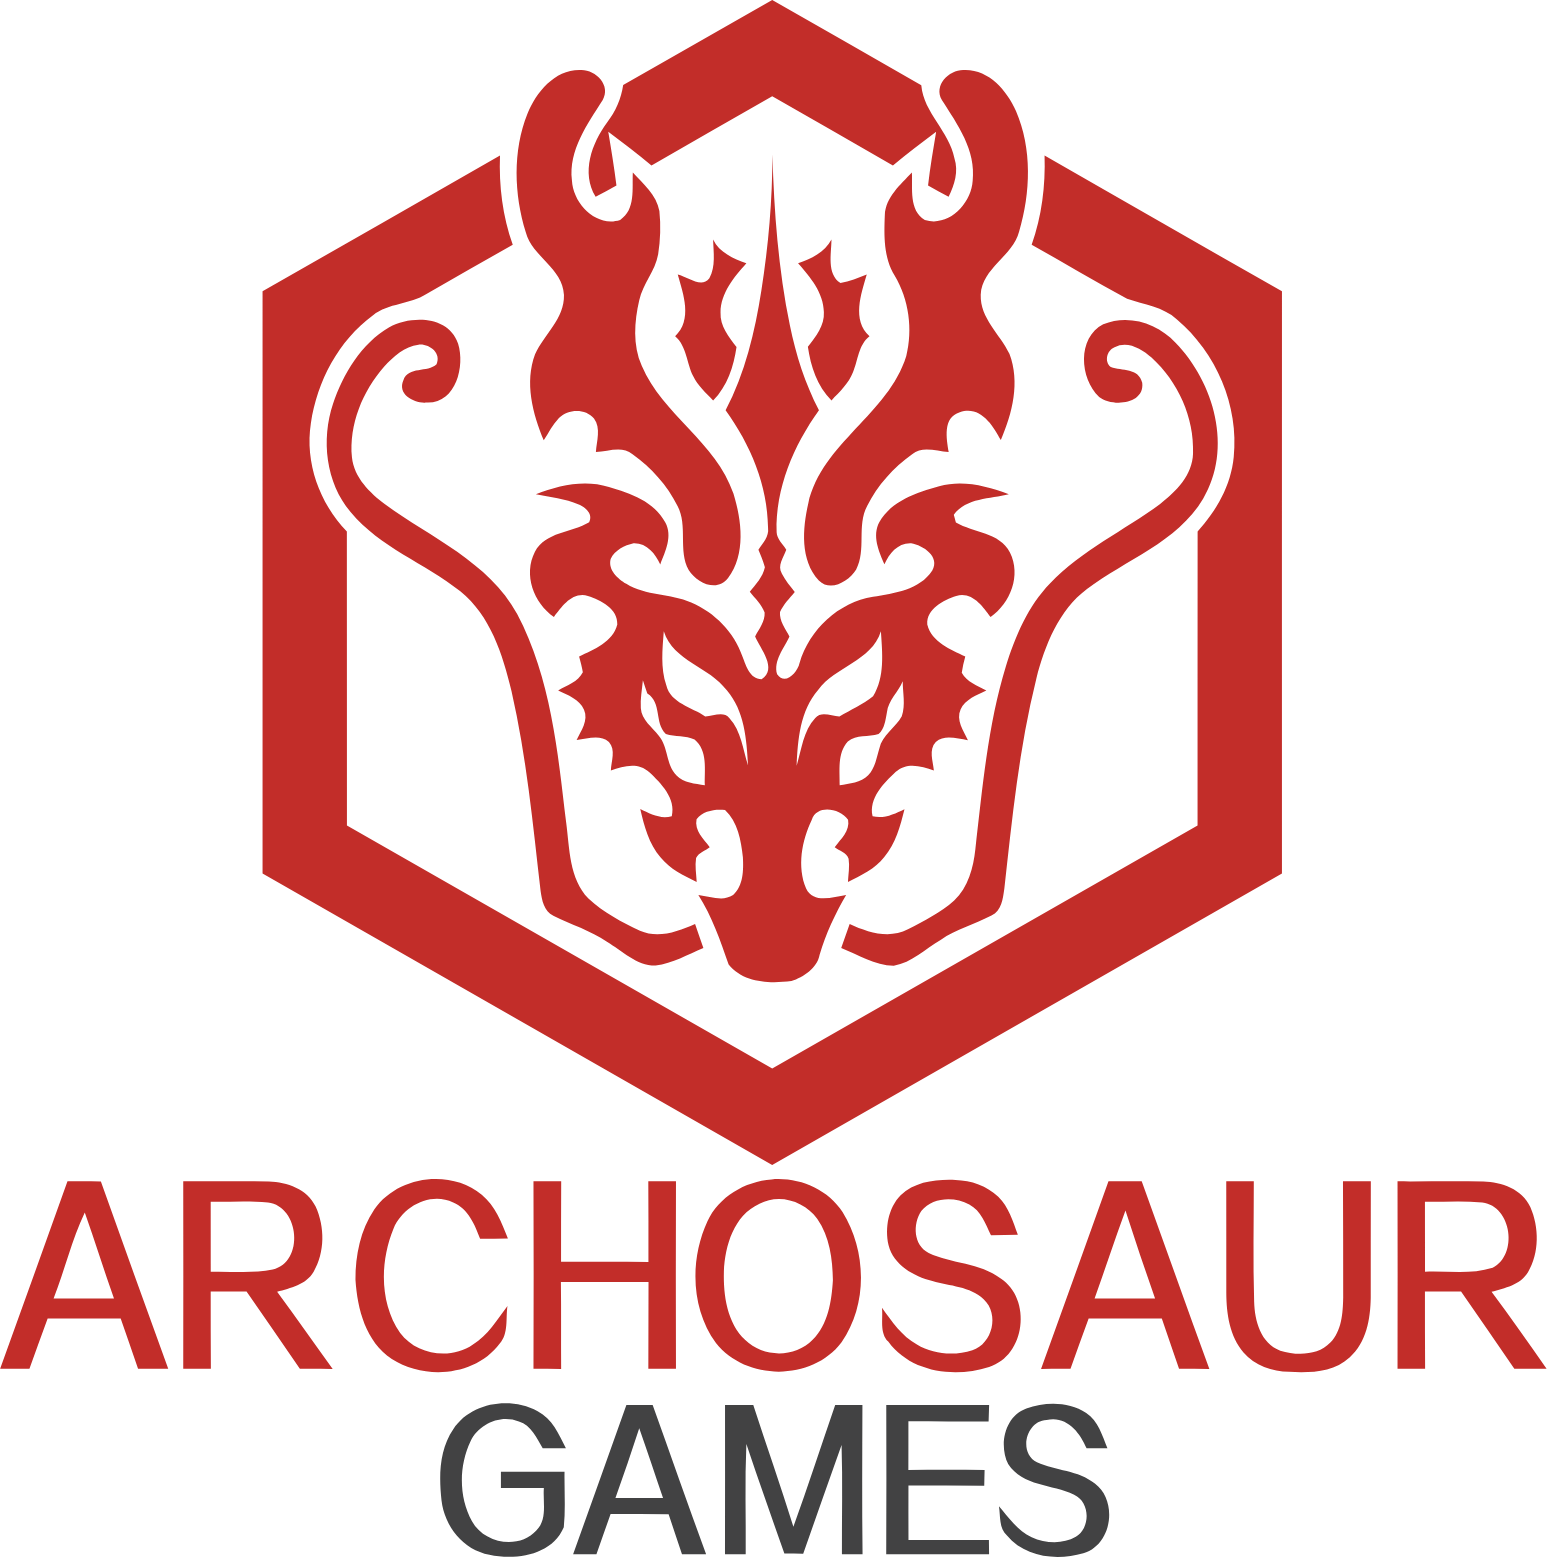 Archosaur Games logo large (transparent PNG)